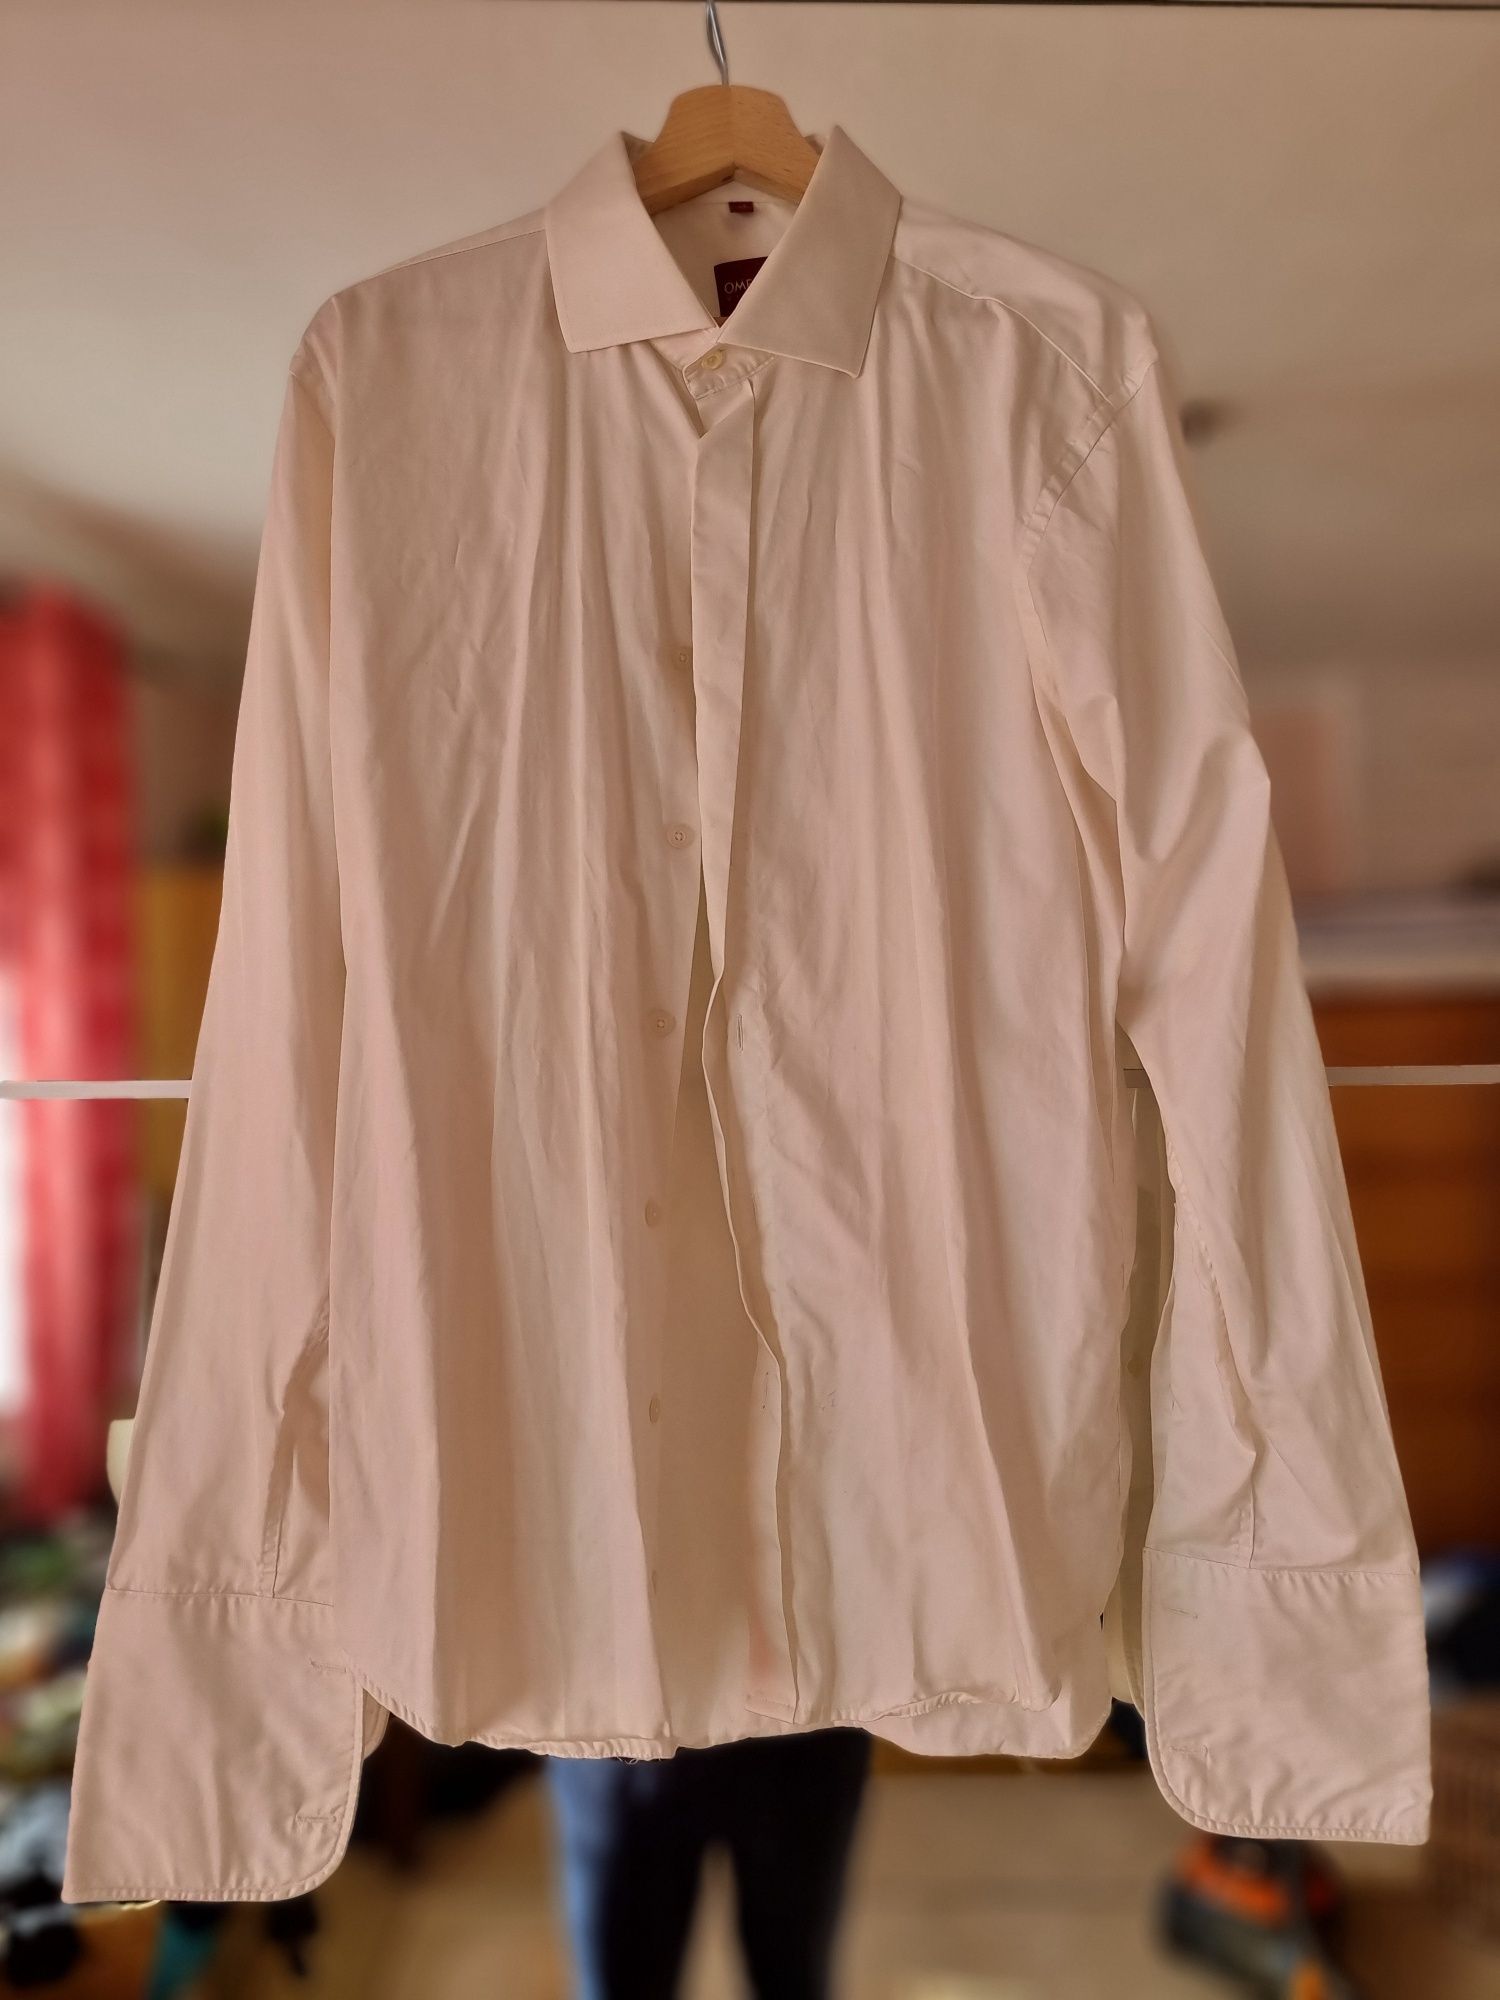 Koszula męską smietankowa biel, XL, kołniezyk 43, na spinki